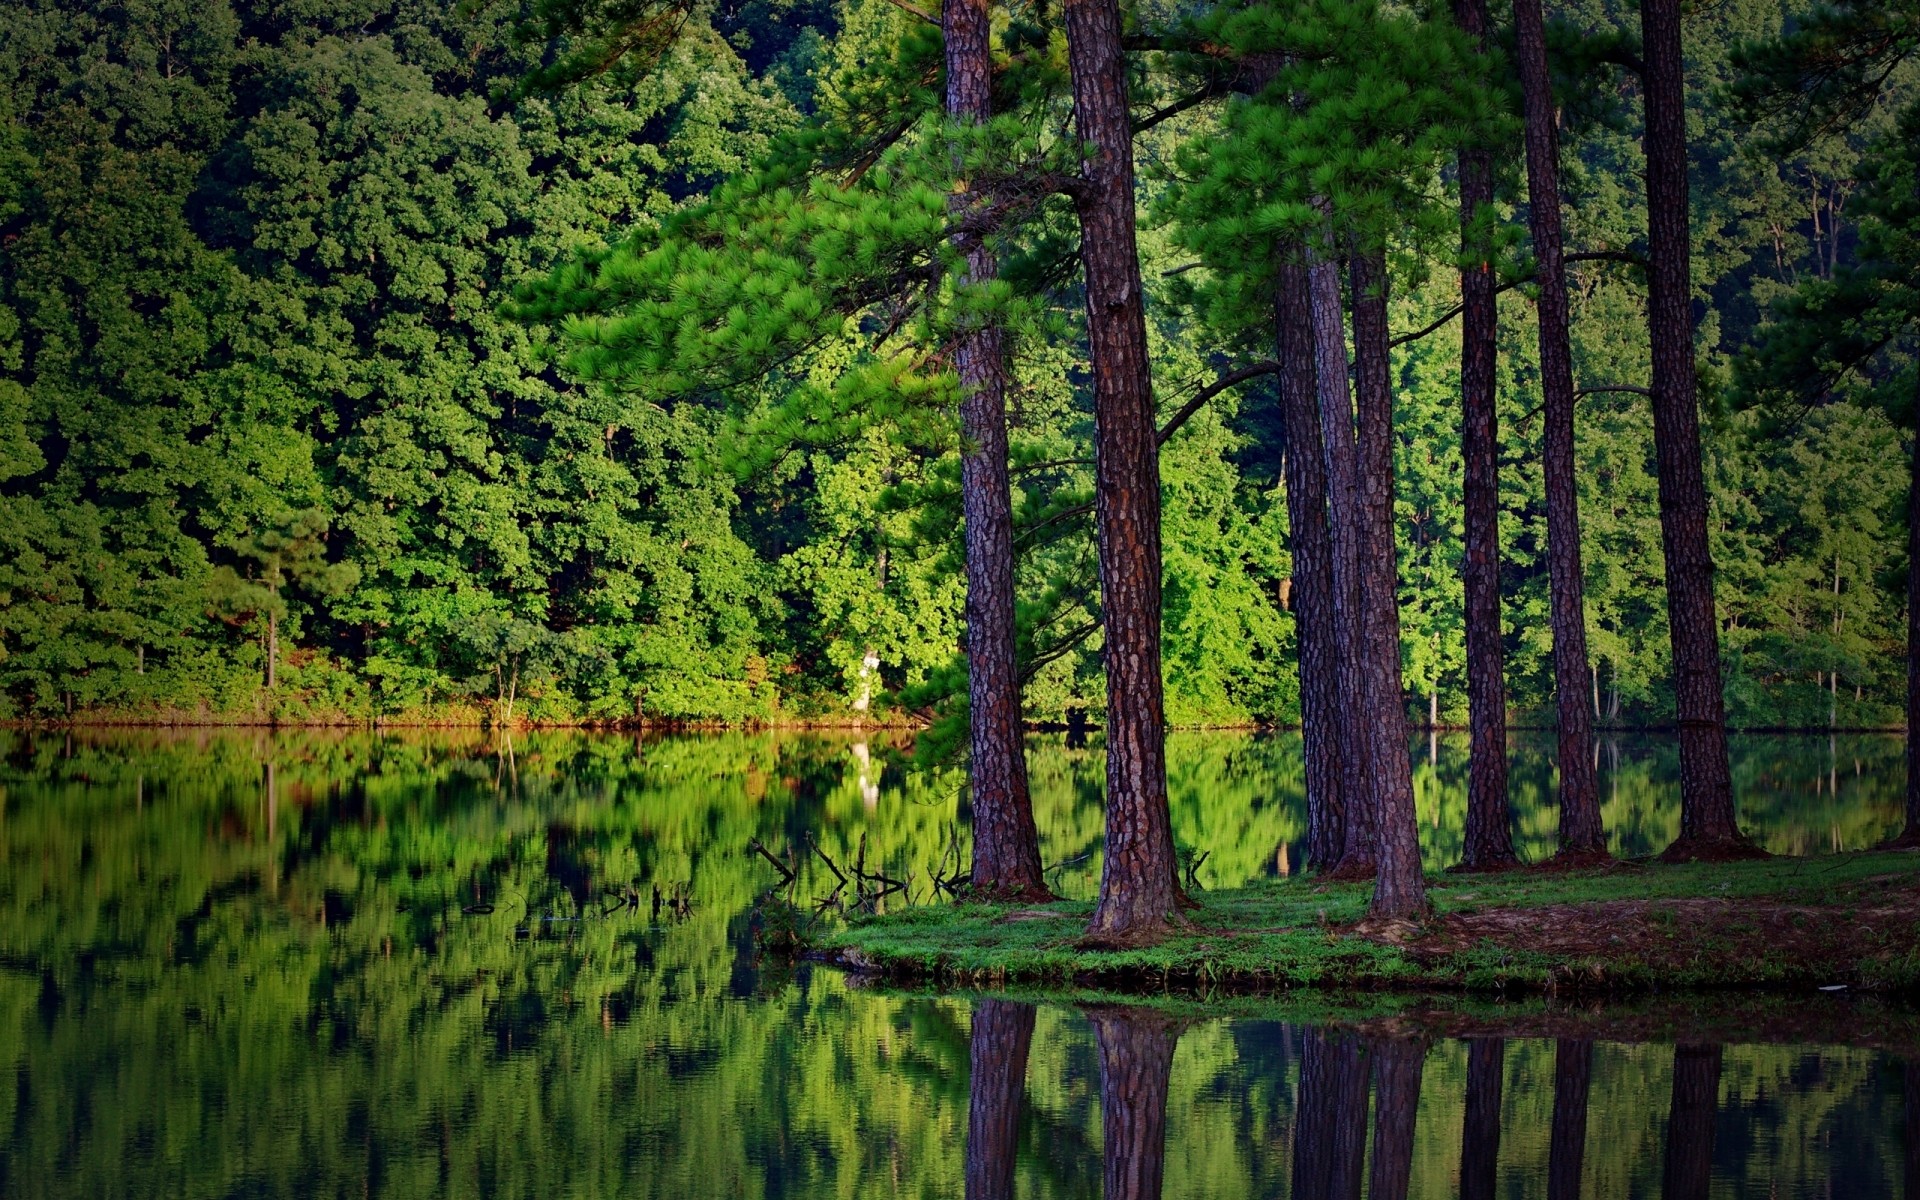 пейзажи древесины пейзаж природа дерево воды на открытом воздухе хвойные живописный лето лист озеро среды эвергрин отражение парк